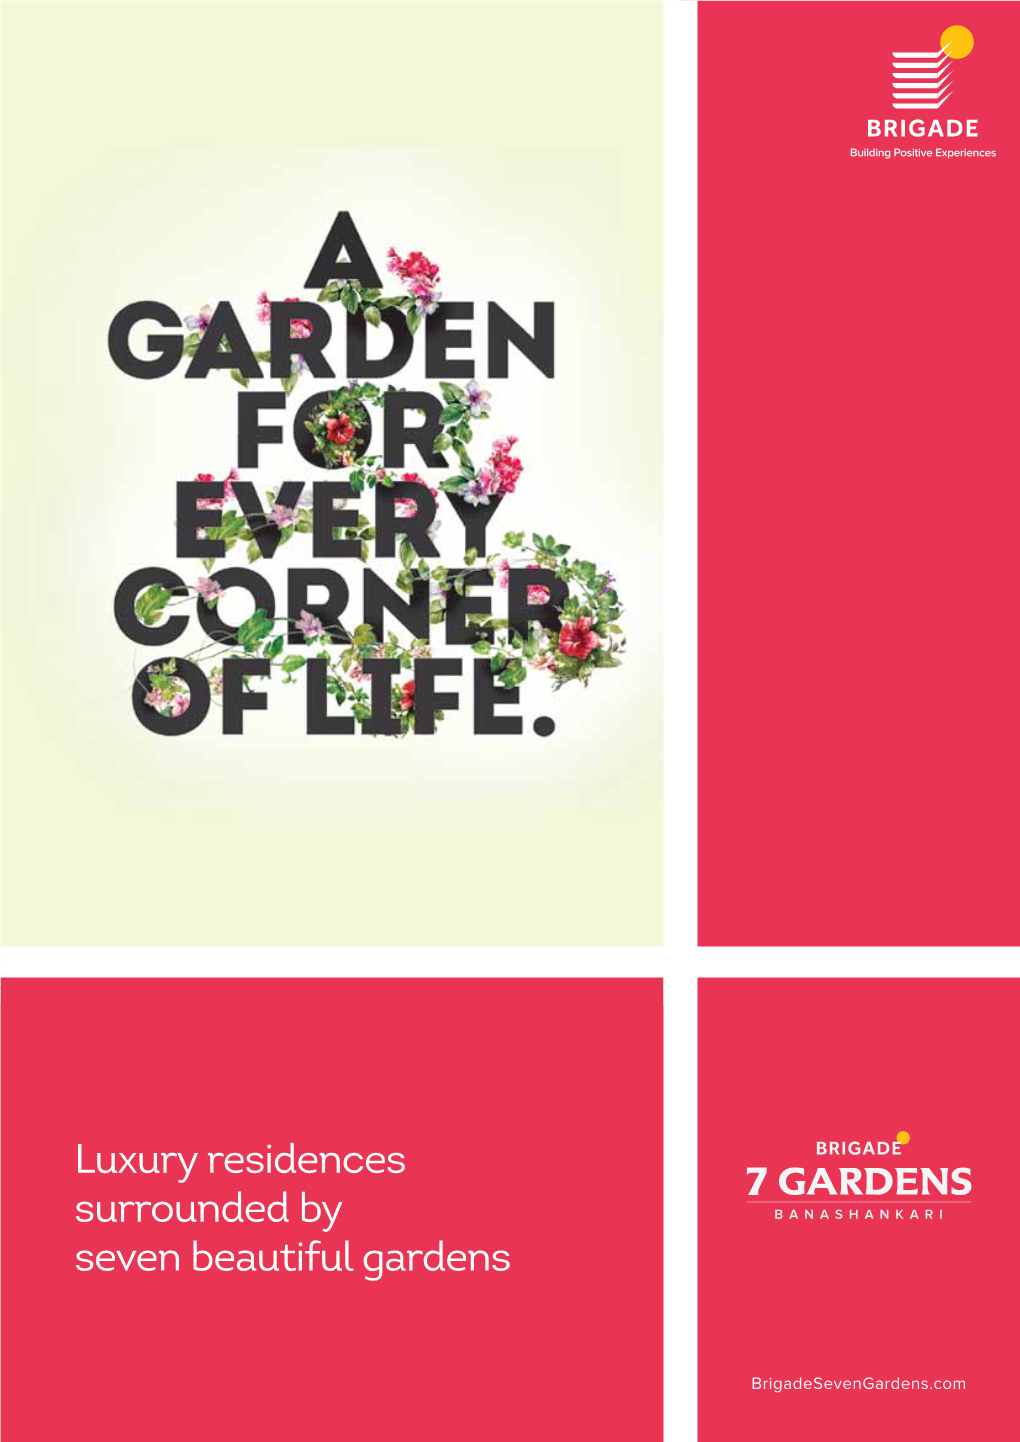 7 Gardens Brochure 210 X 297 Mm 6-10-17